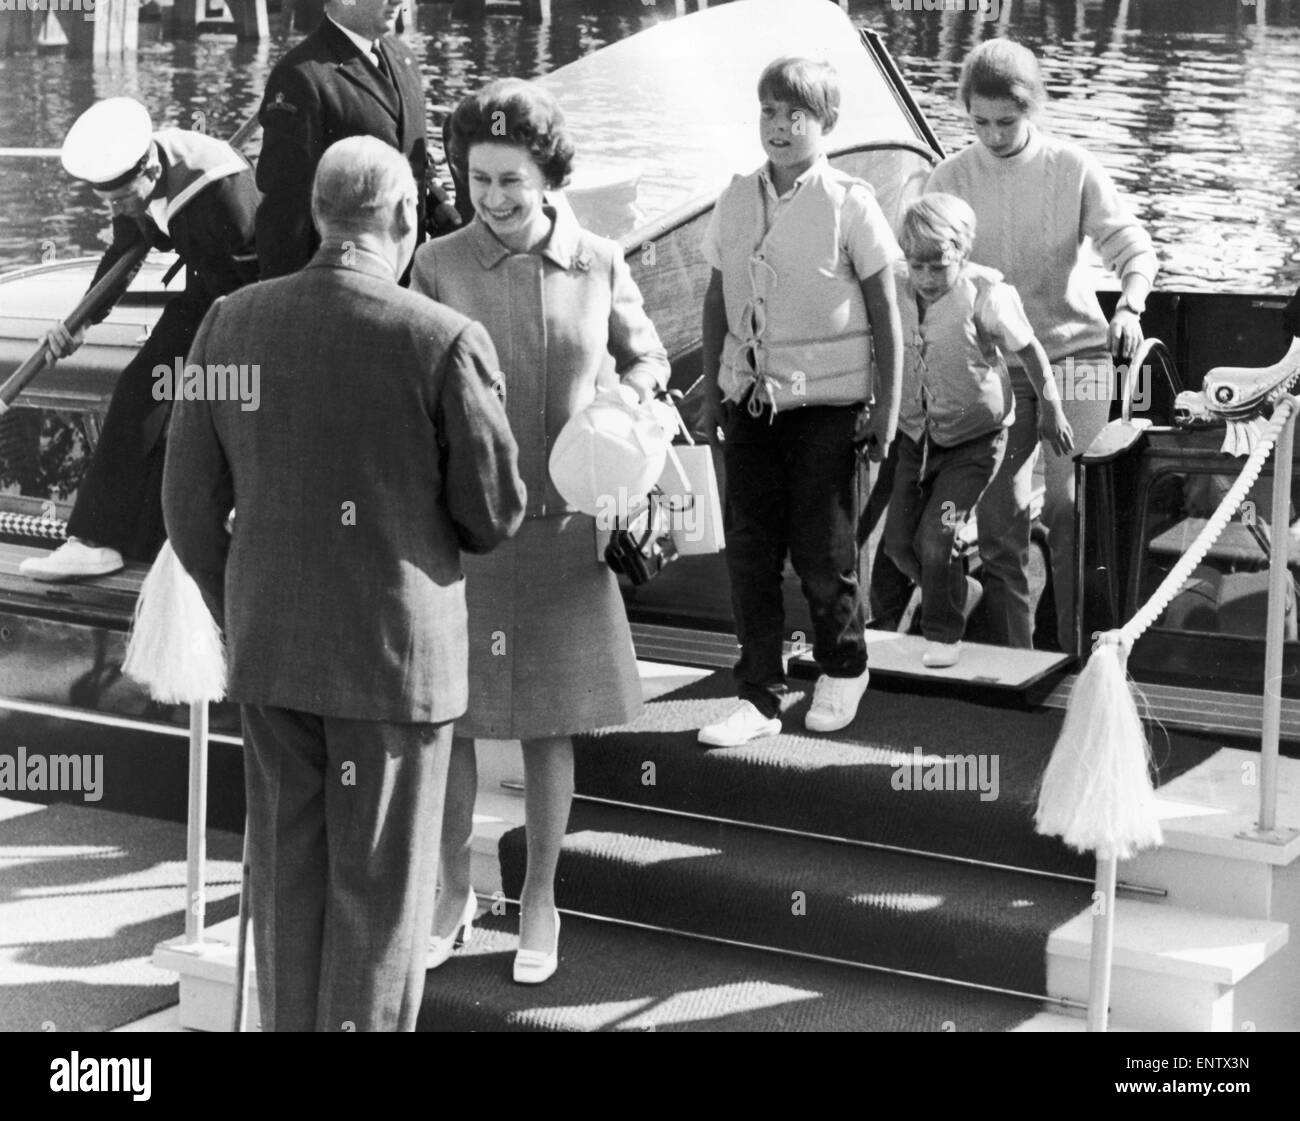 Königliche Tour, die Königin König Olaf von Norwegen zu treffen. Prinz Edward, Prinz Andrew und Prinzessin Anne. 13. Juni 1969. Stockfoto